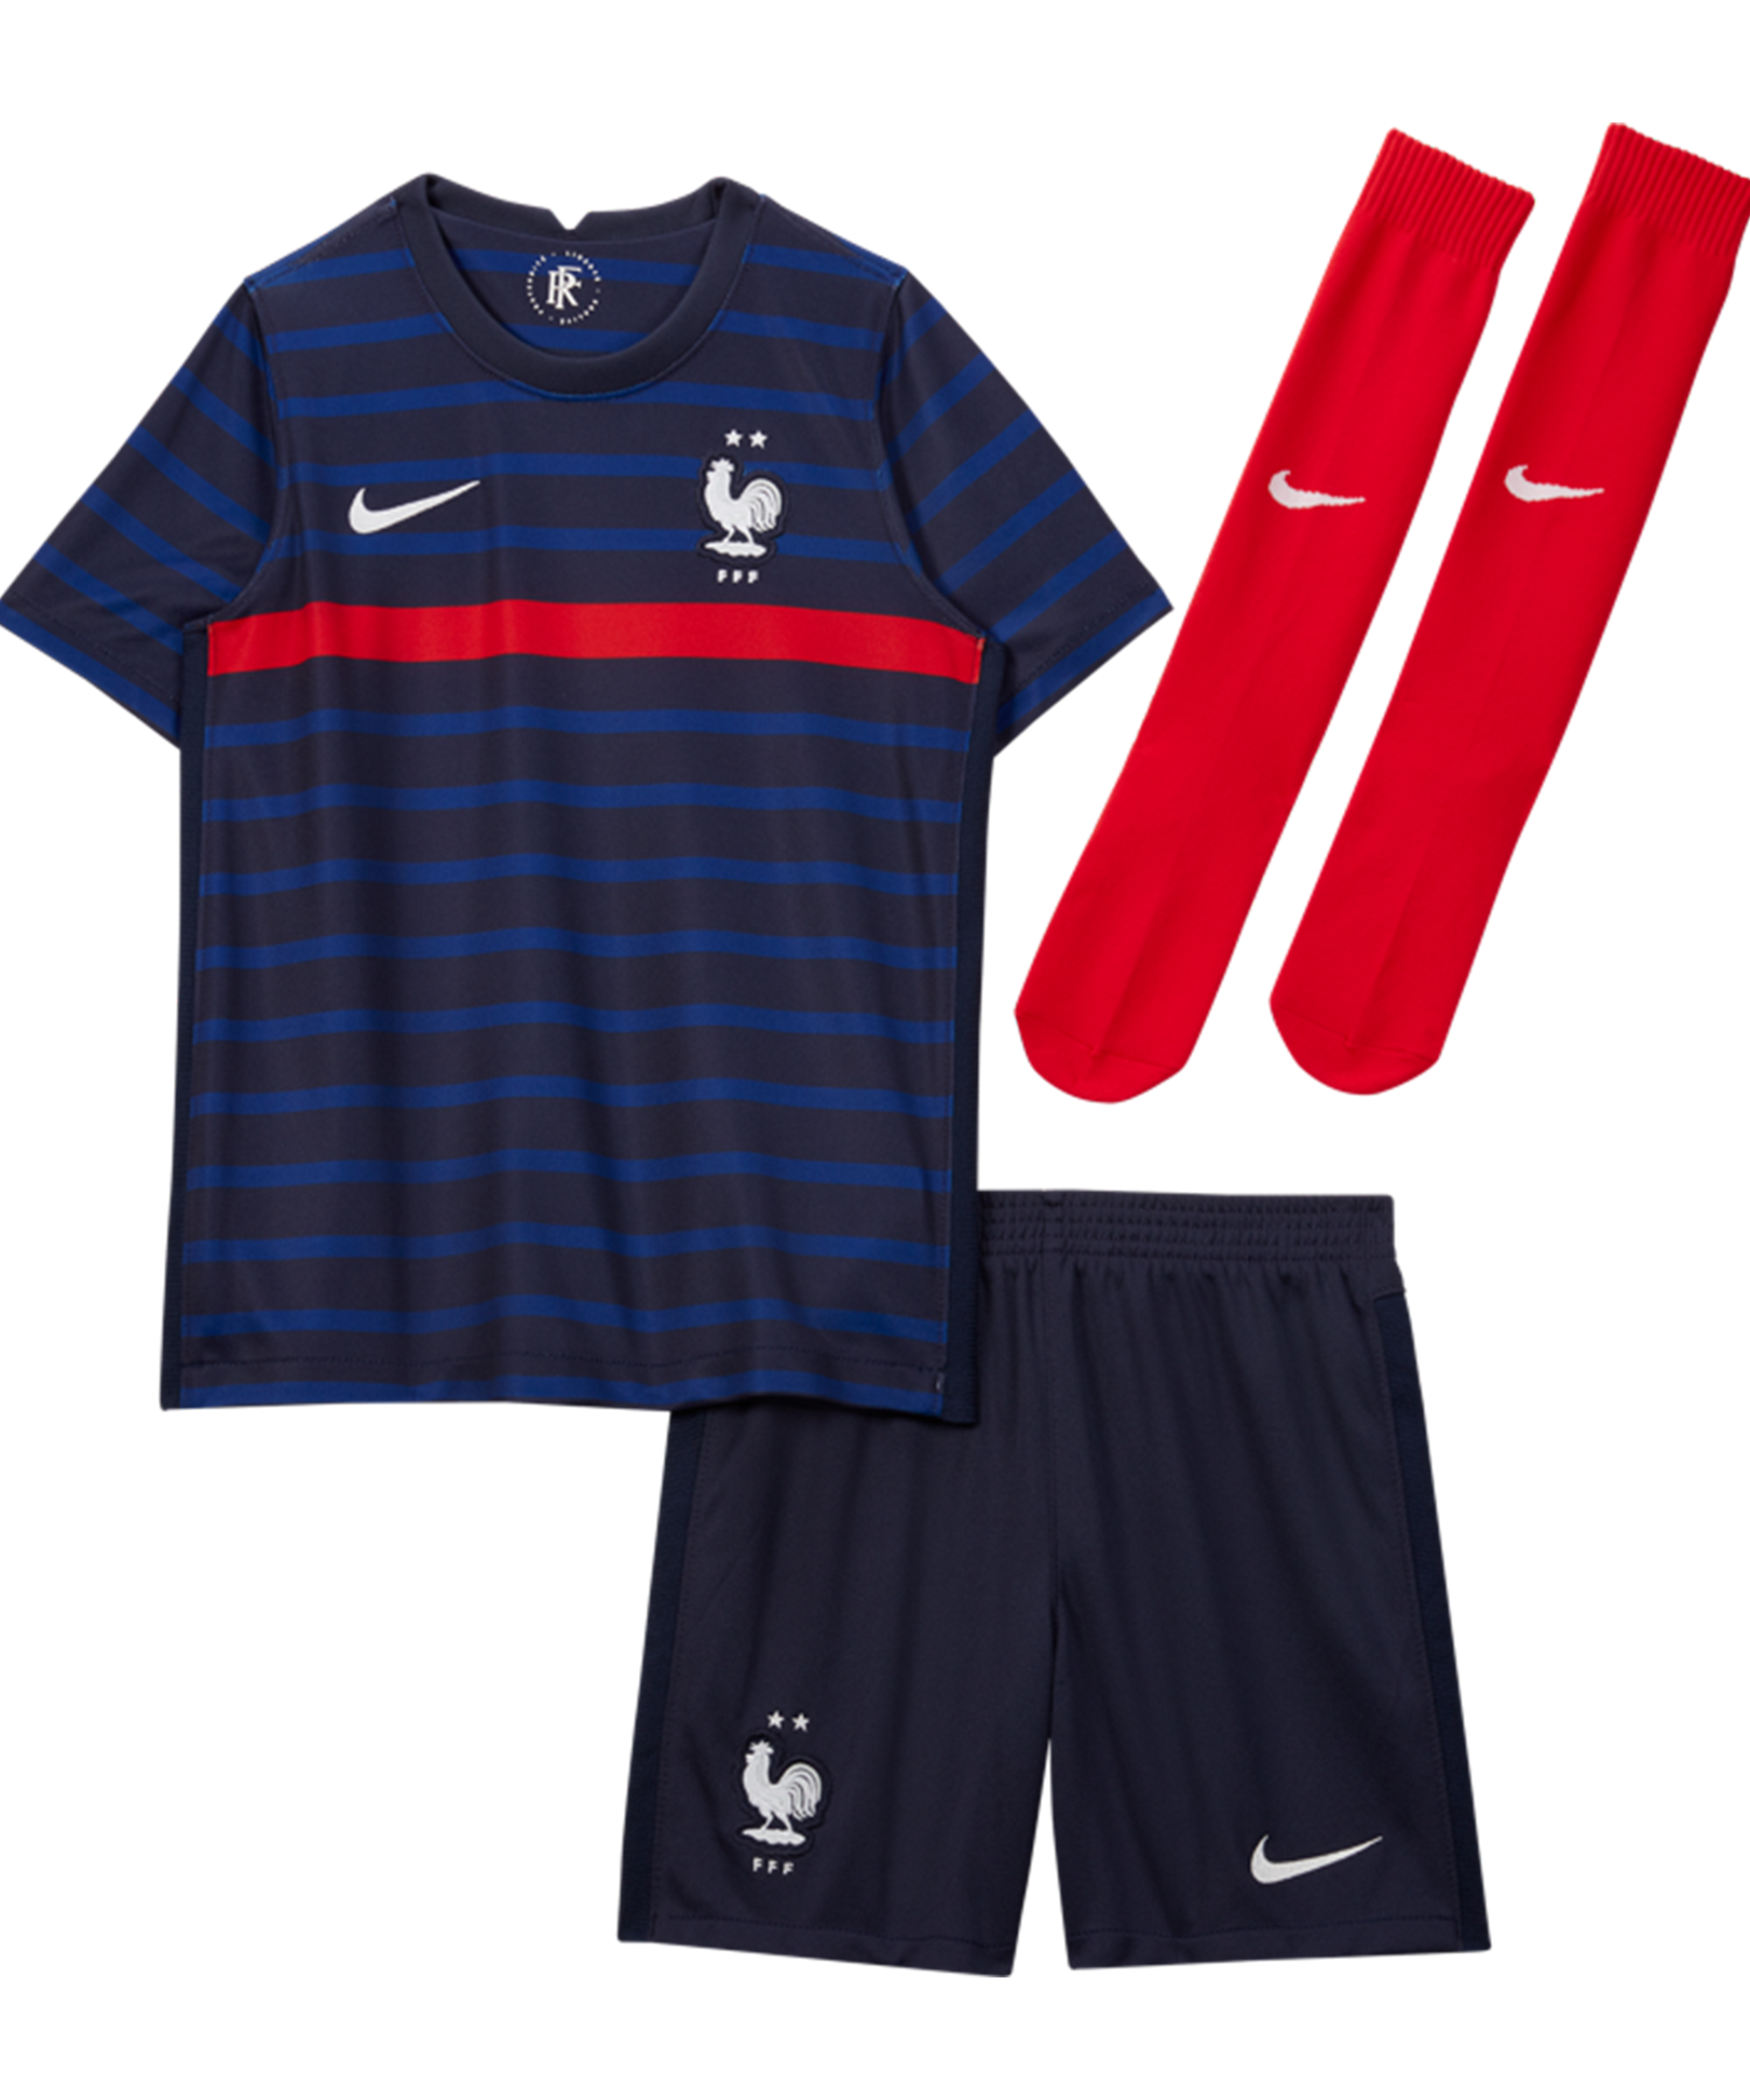 Verkeerd matig vaas Nike France Mini Kit Home EM 2020 - White